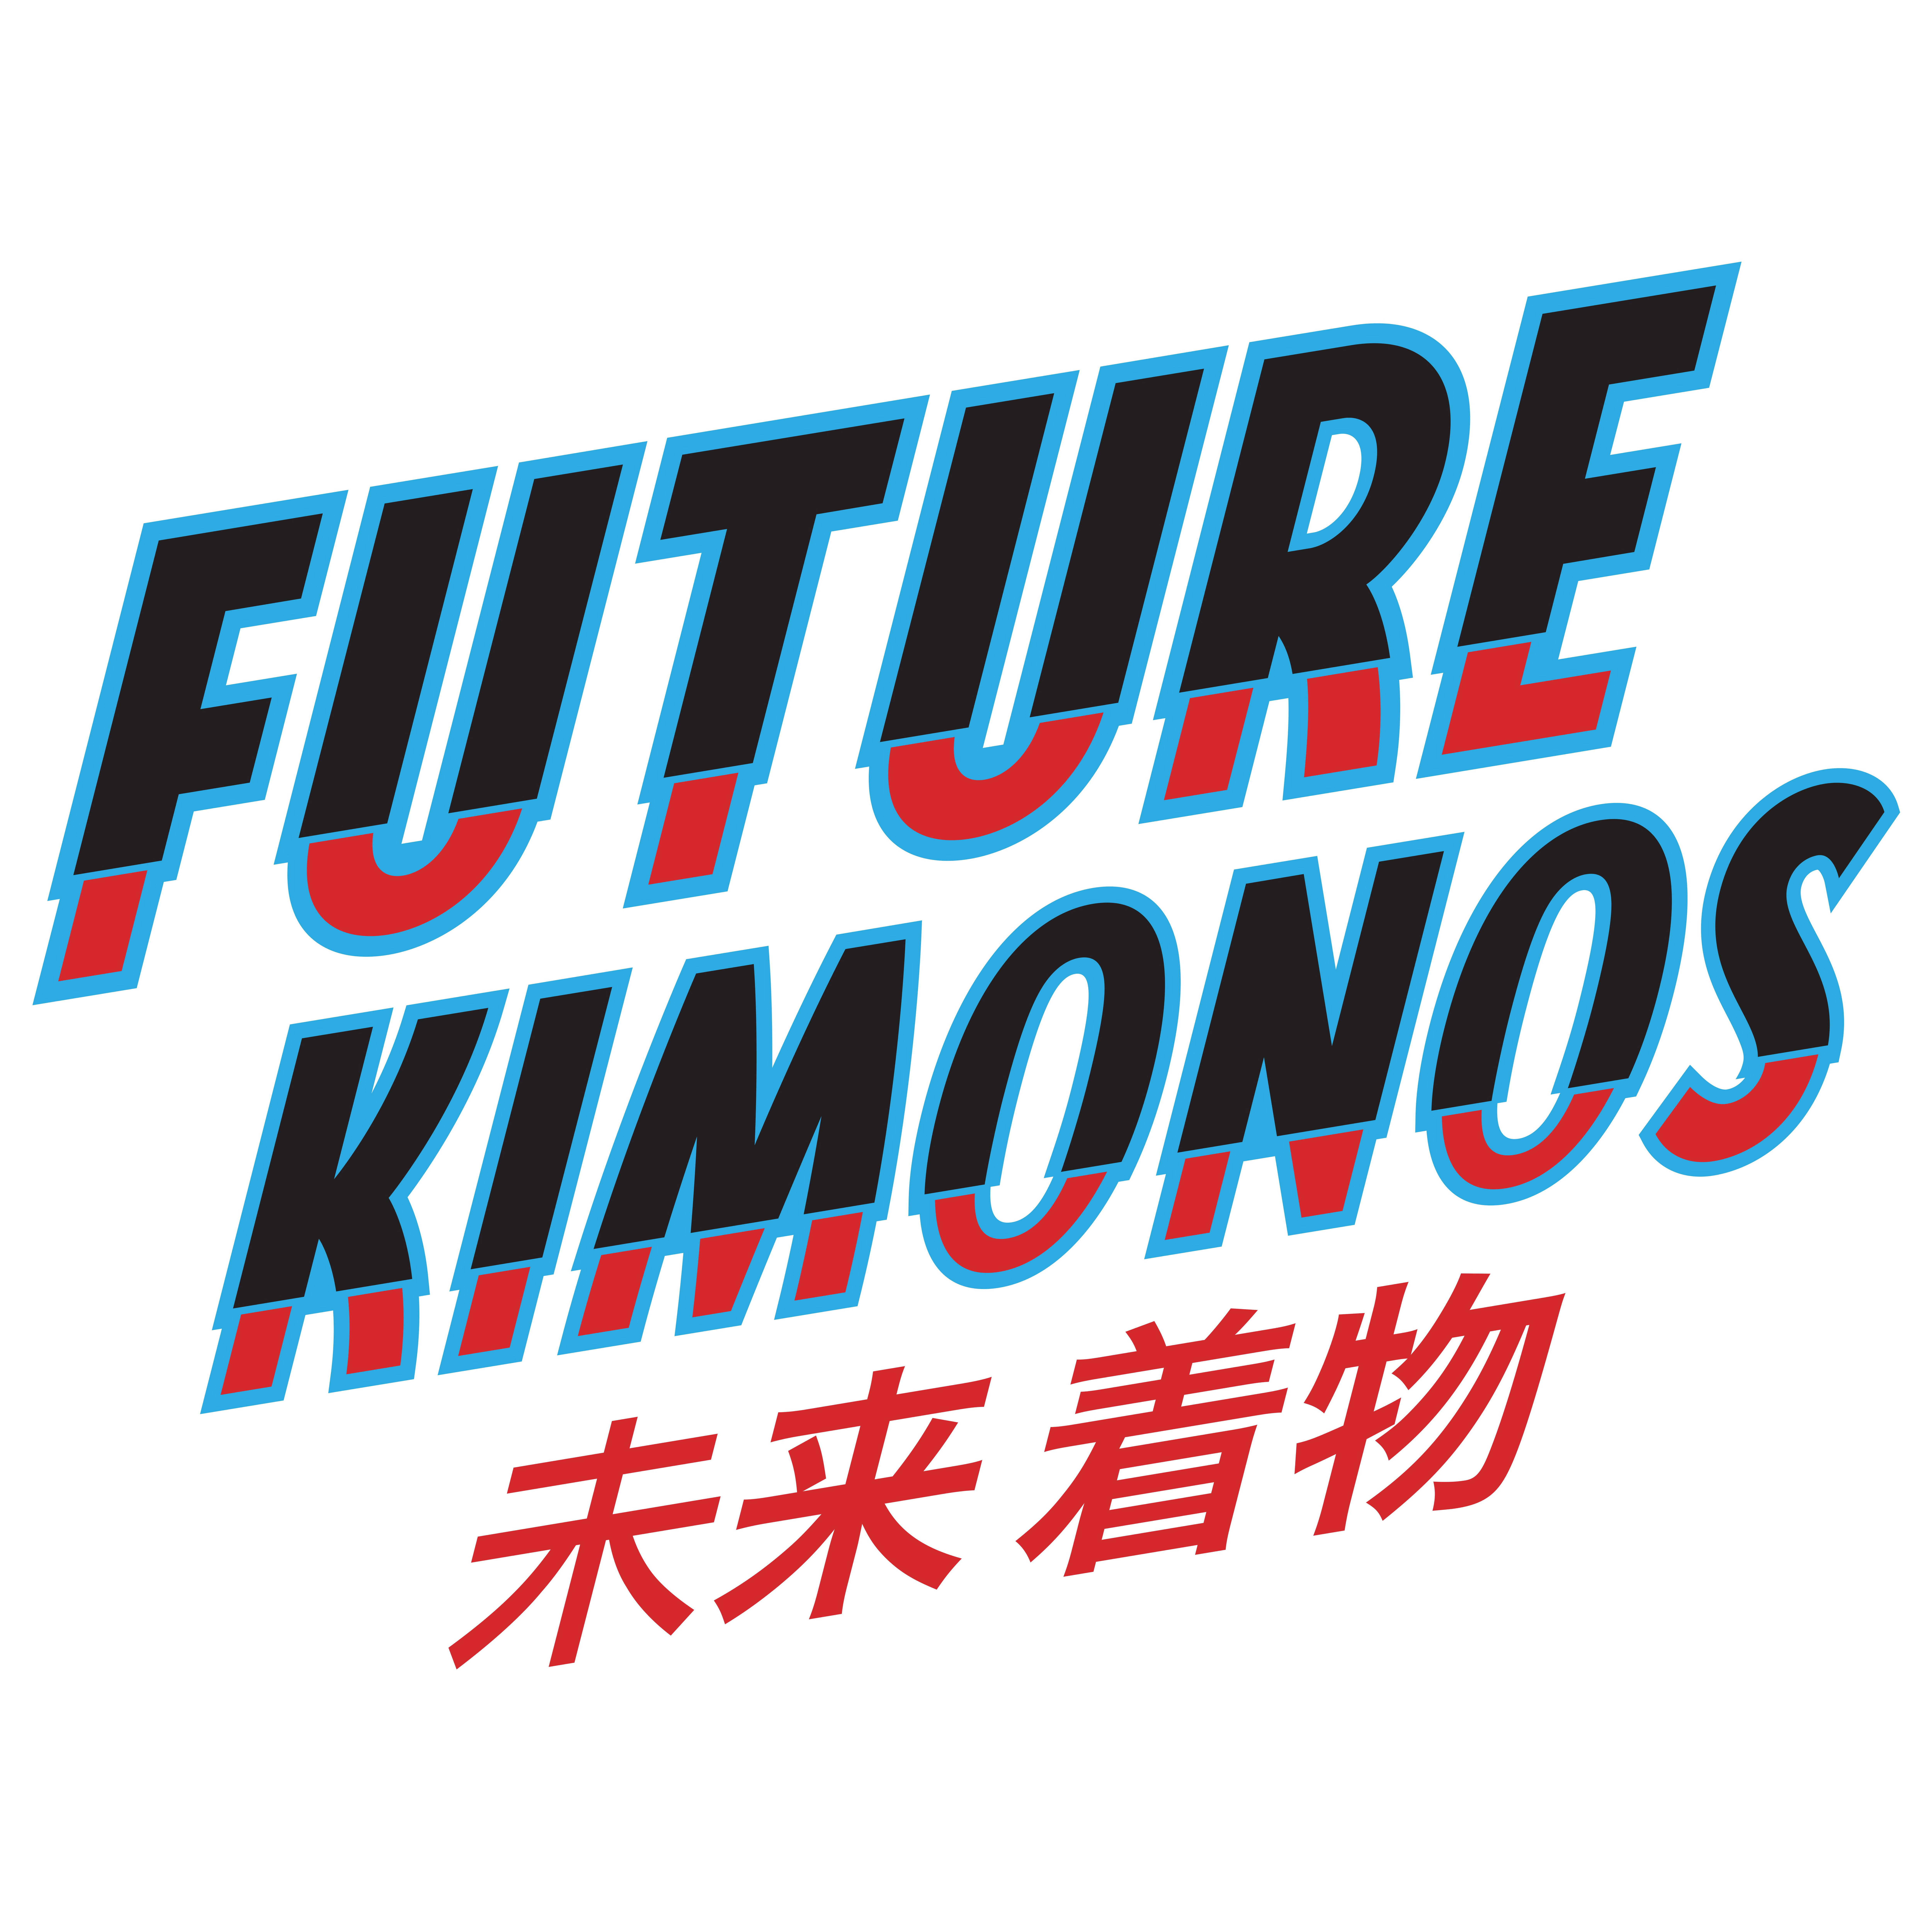 FUTURE KIMONOS